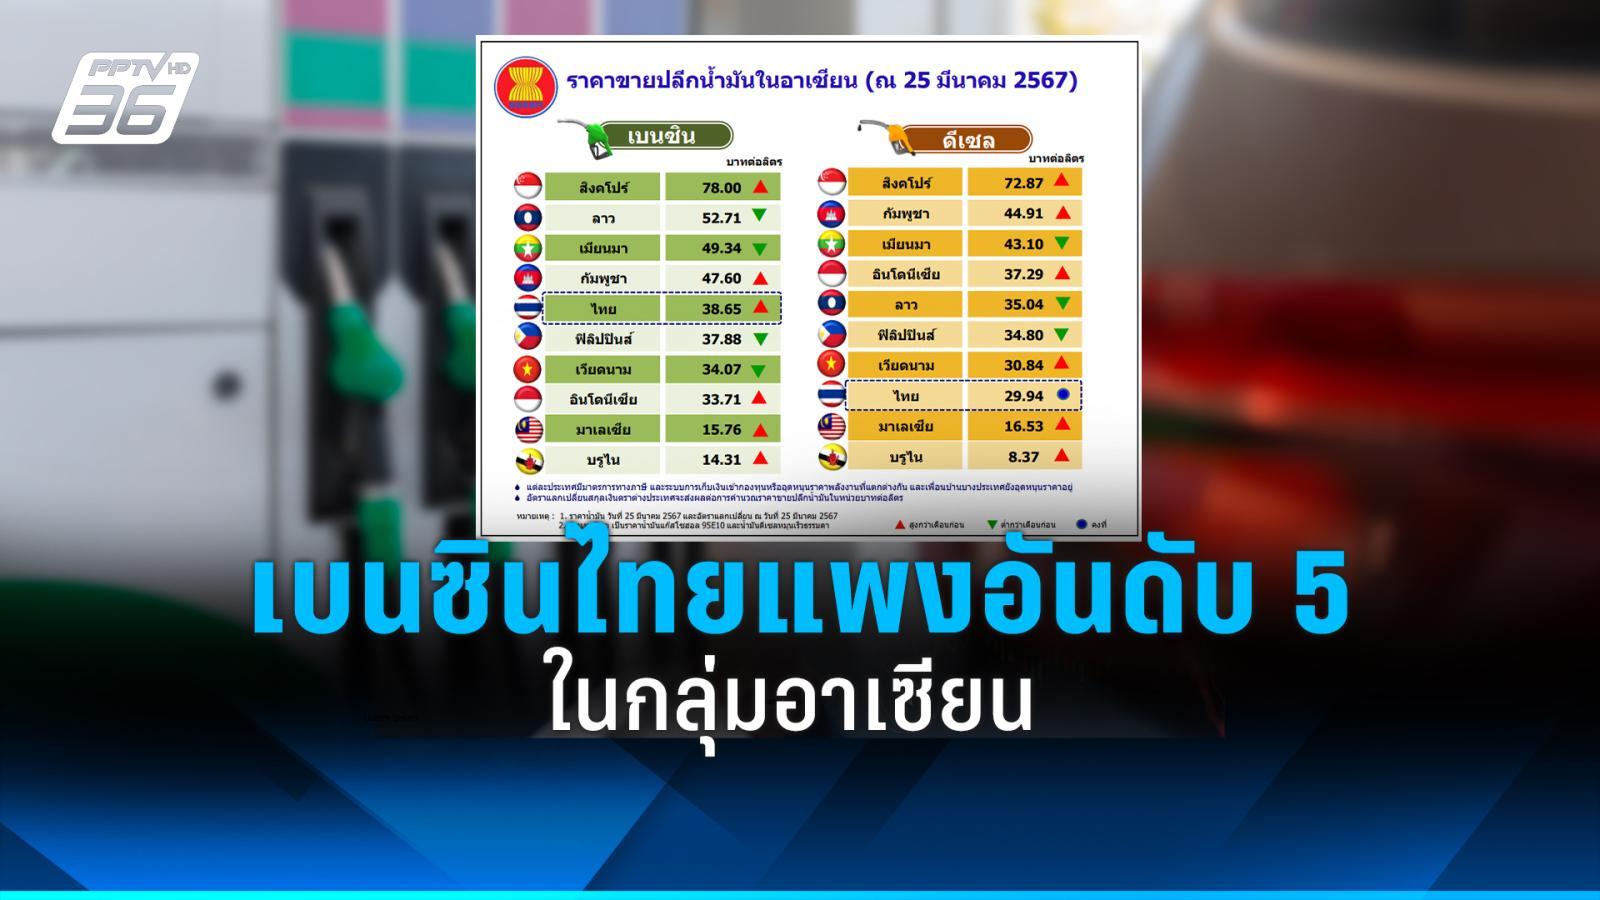 ราคาน้ำมันเบนซินไทยแพงติดอันดับ 5 ในกลุ่มอาเซียน